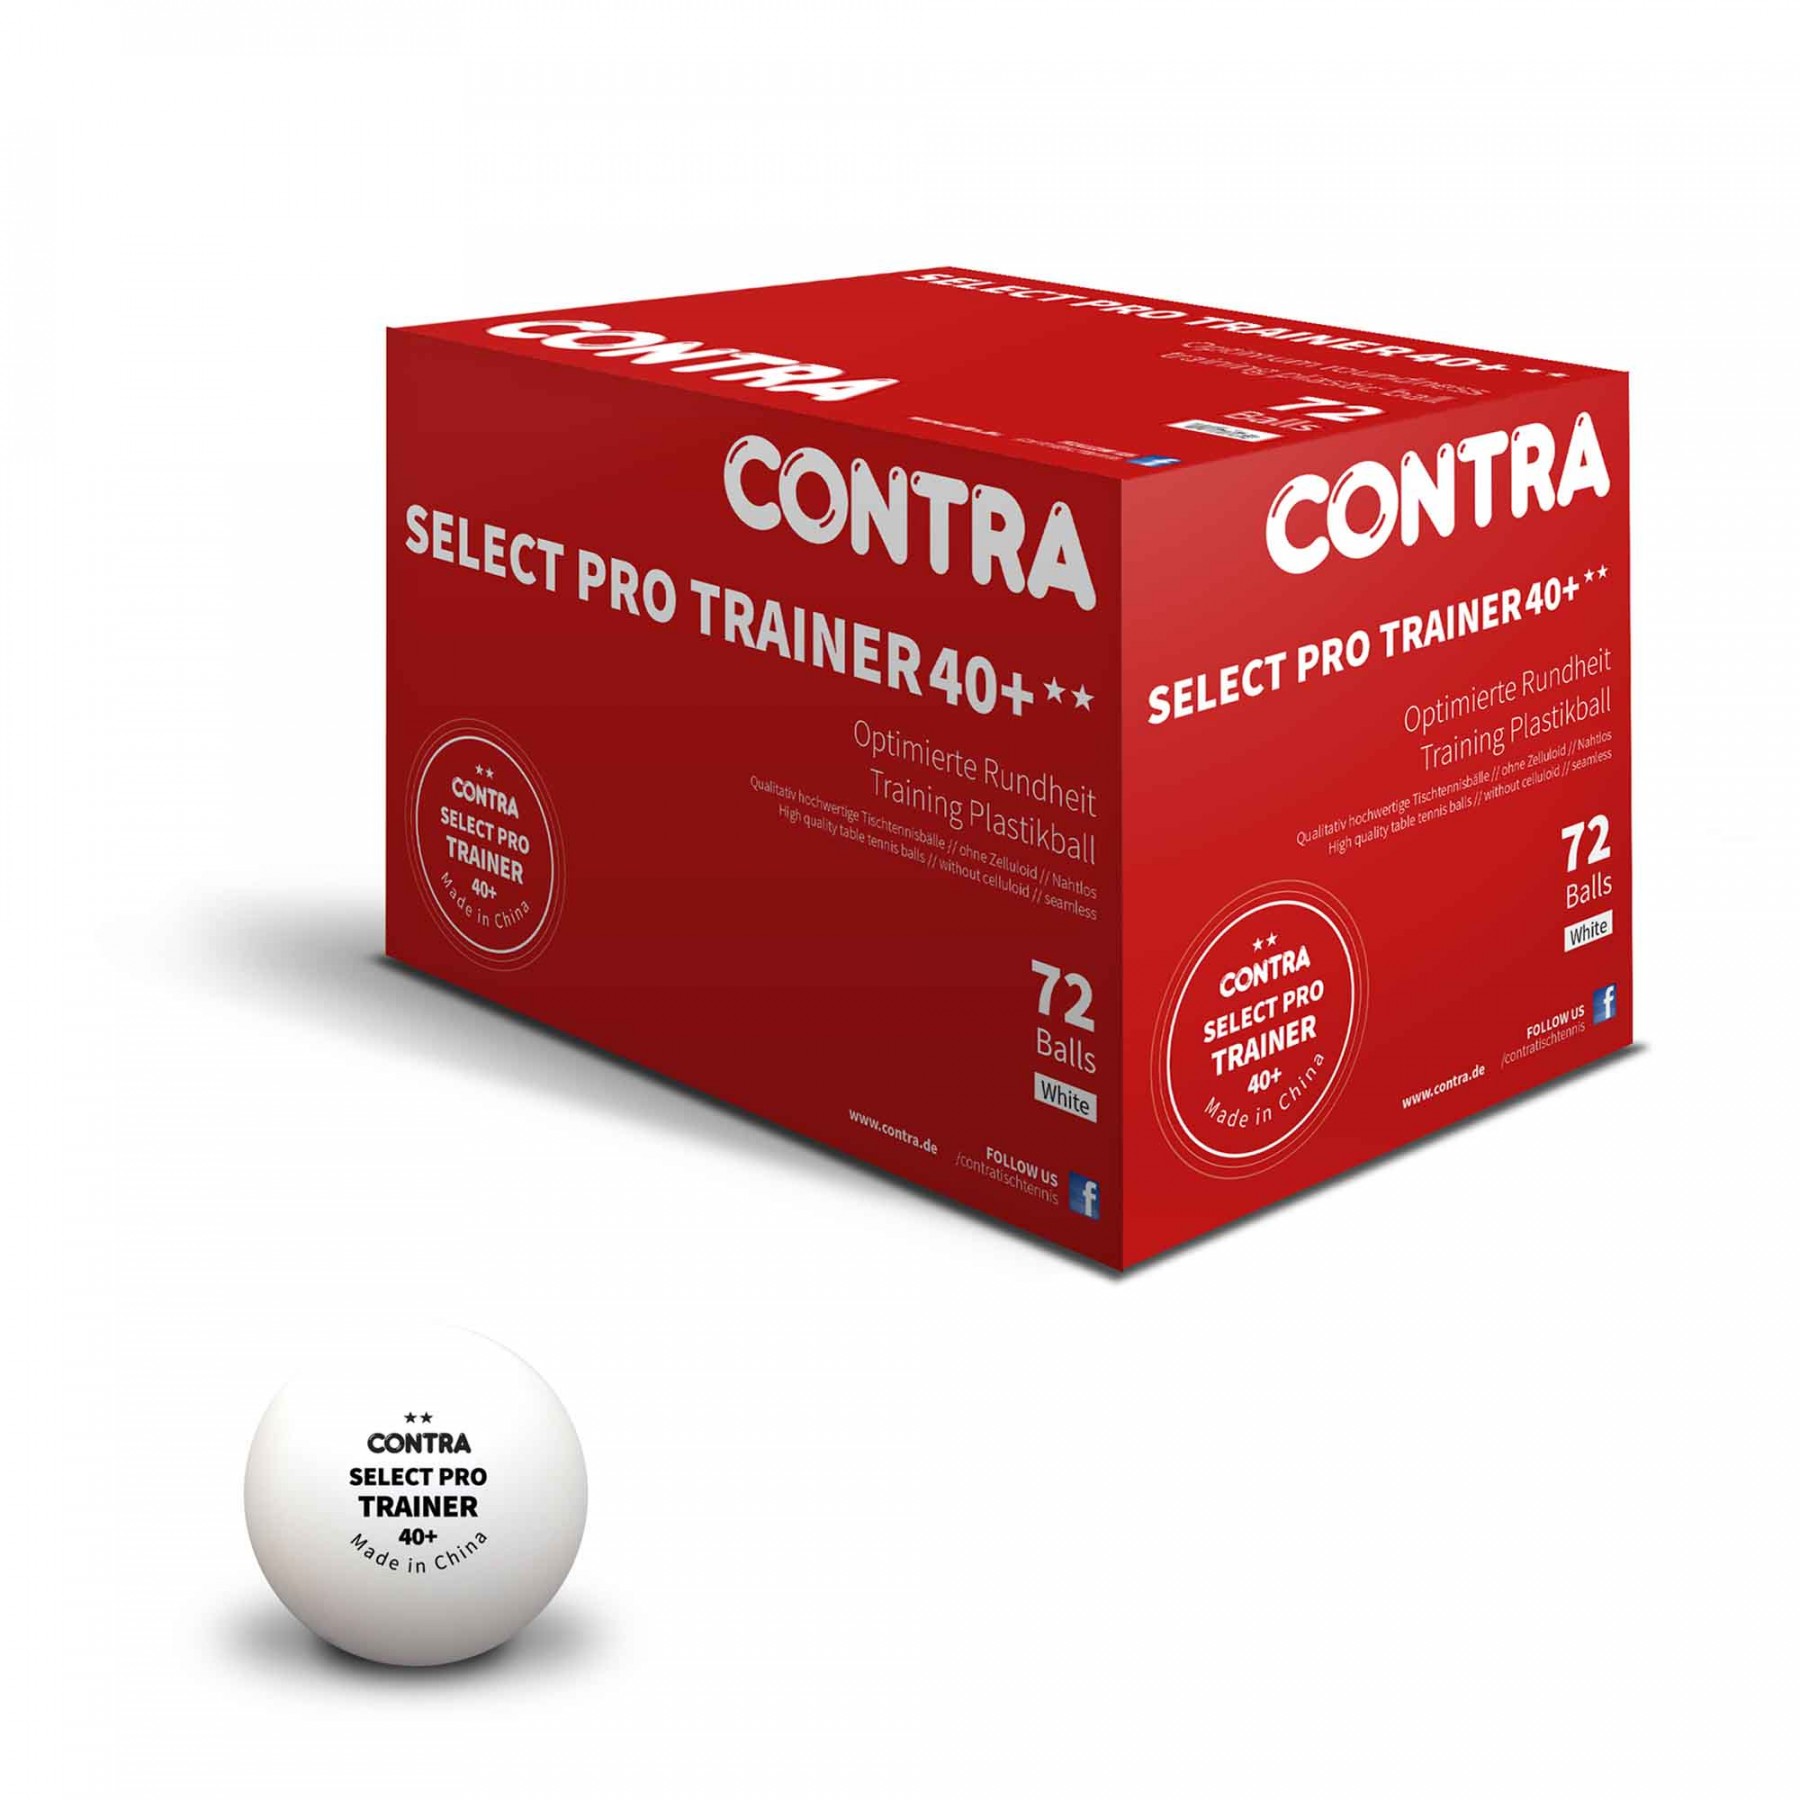 CONTRA – Der Onlineshop für hochwertige Tischtennisartikel